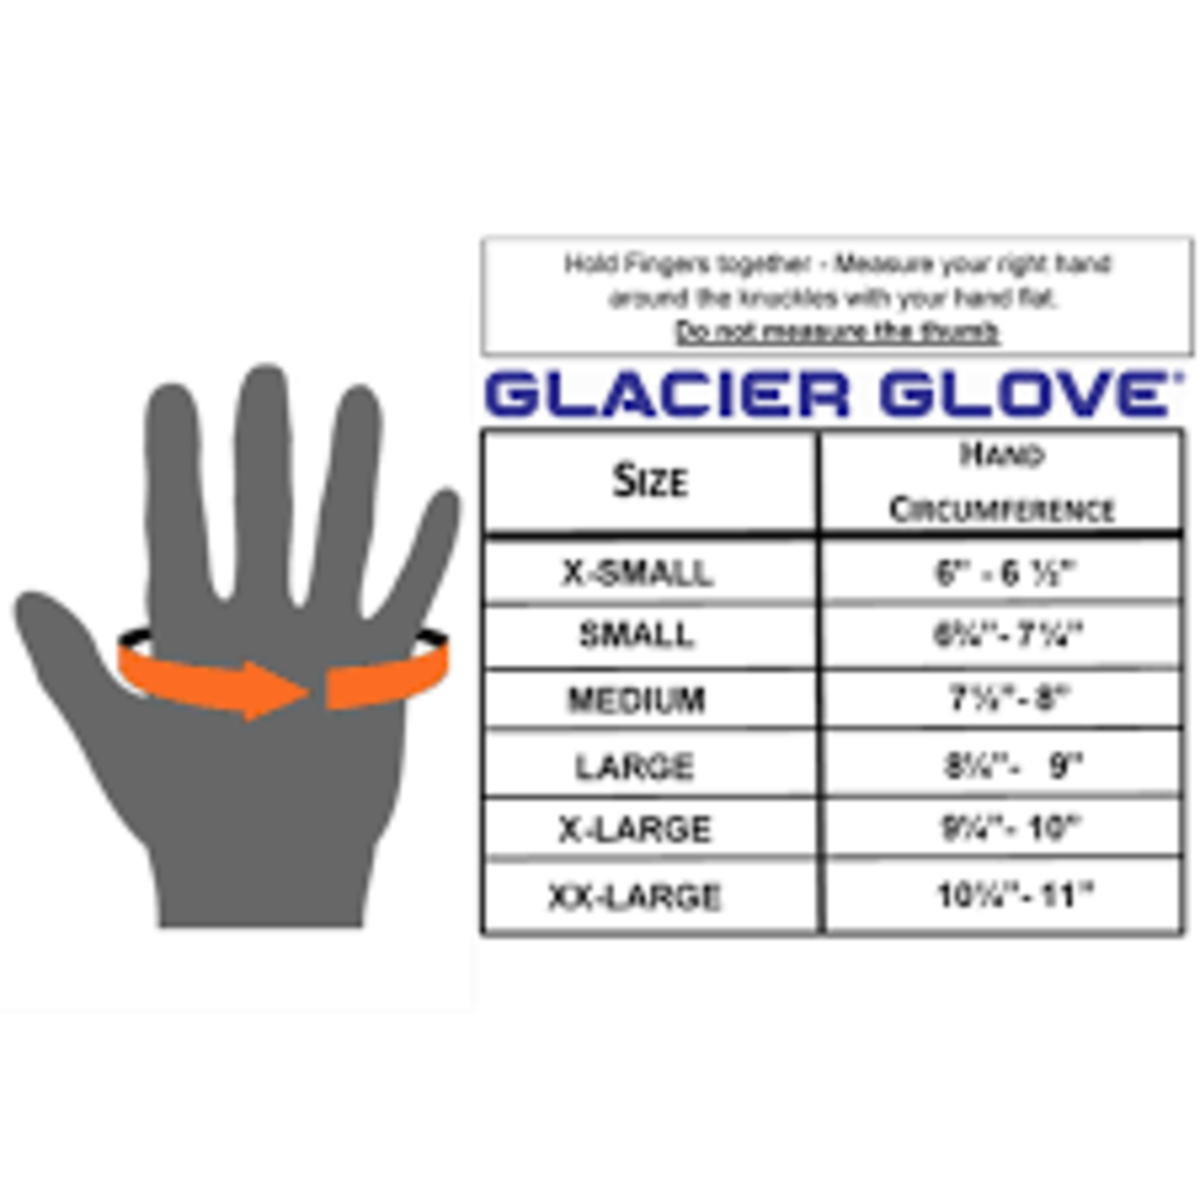 Glacier Grove Fitting Guide